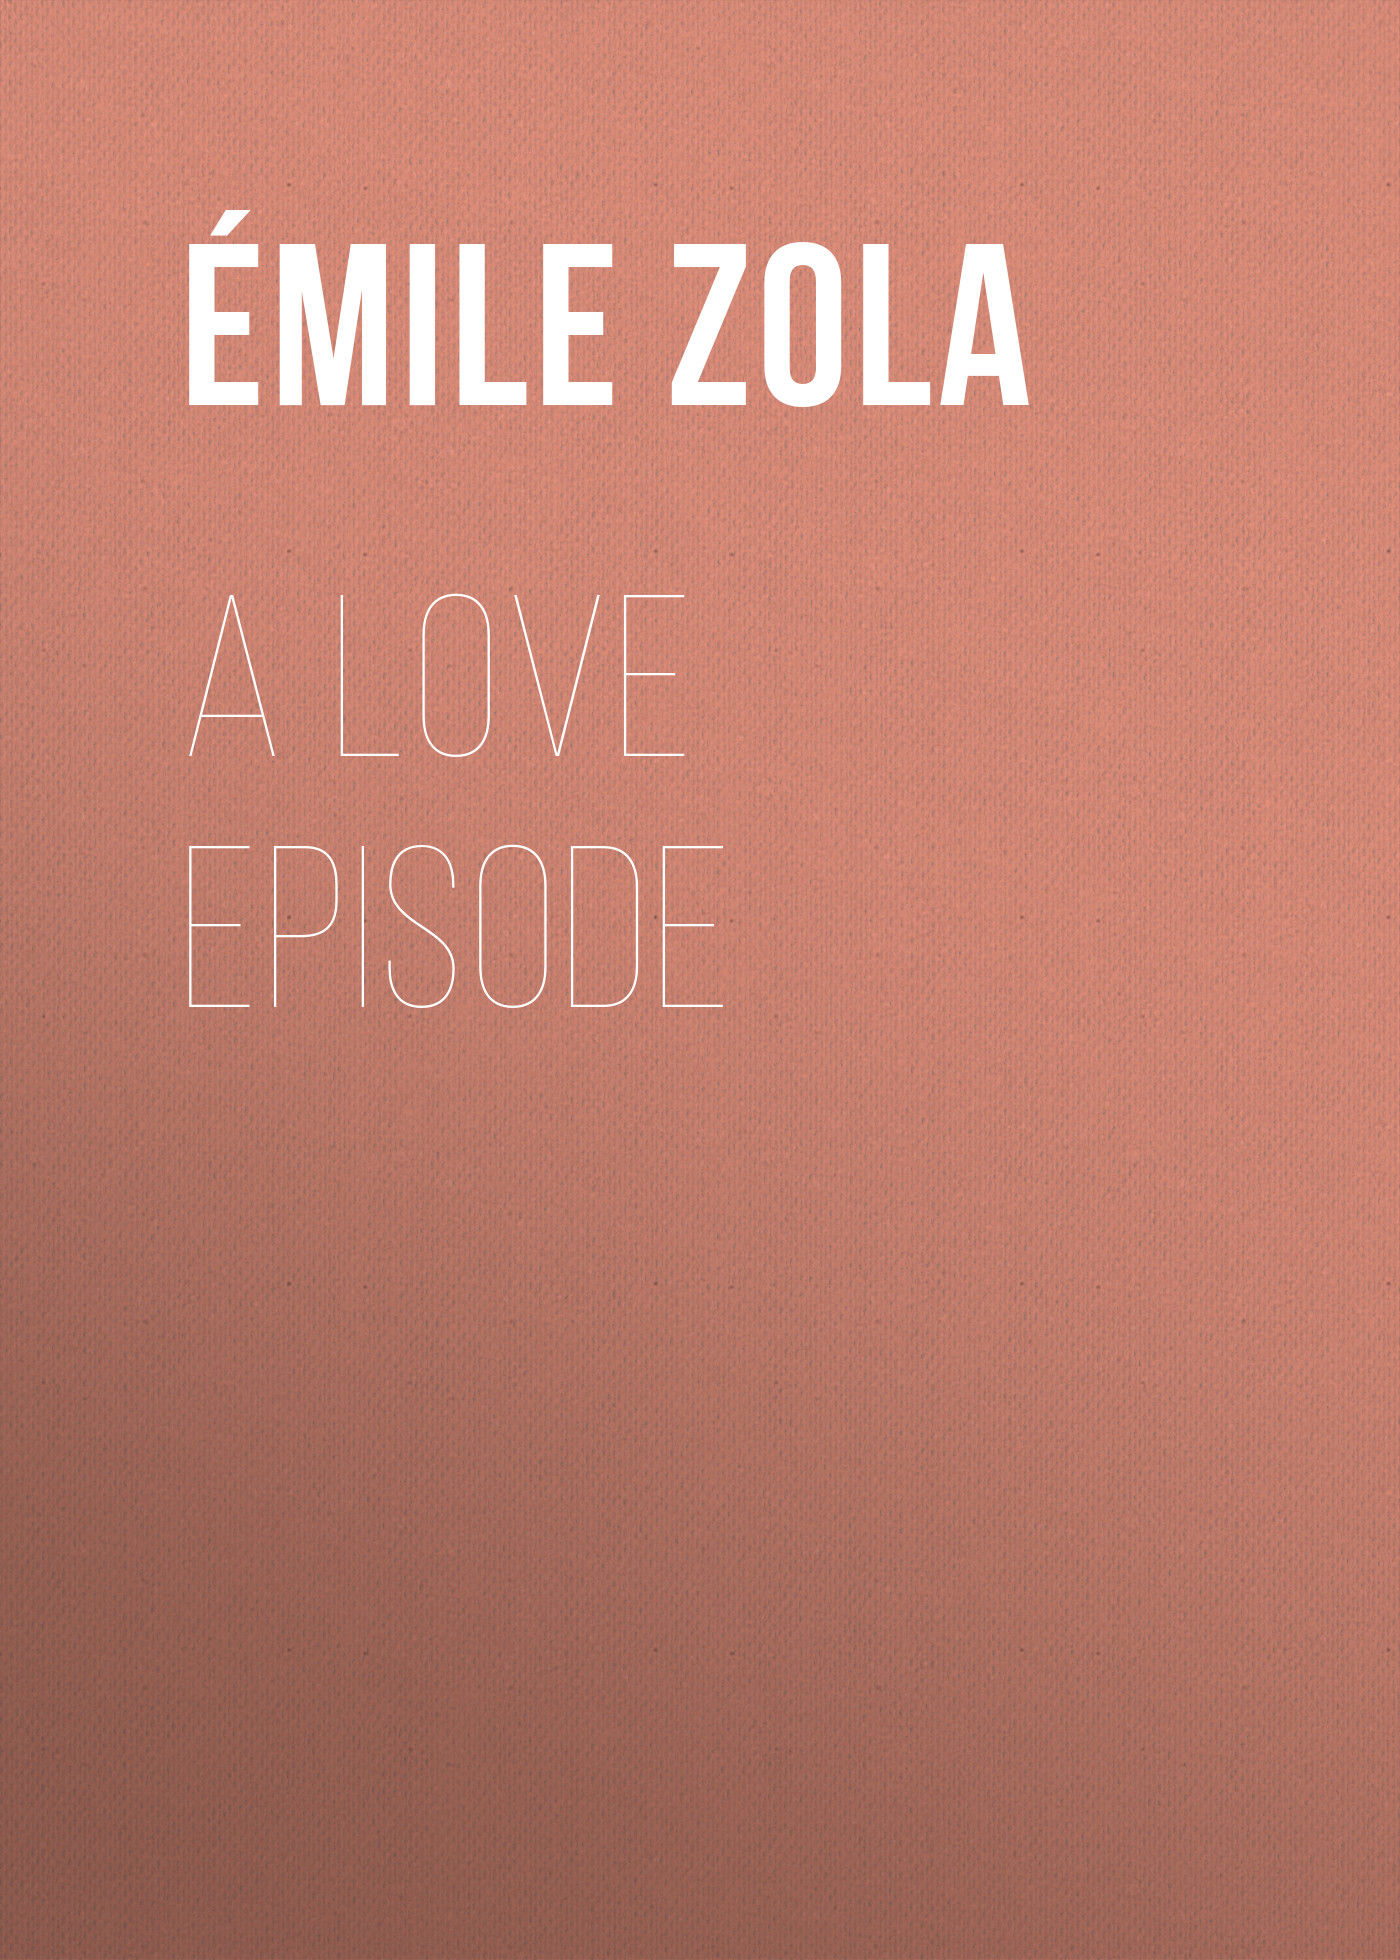 Книга A Love Episode из серии , созданная Émile Zola, может относится к жанру Литература 19 века, Зарубежная старинная литература, Зарубежная классика. Стоимость электронной книги A Love Episode с идентификатором 25559948 составляет 0 руб.